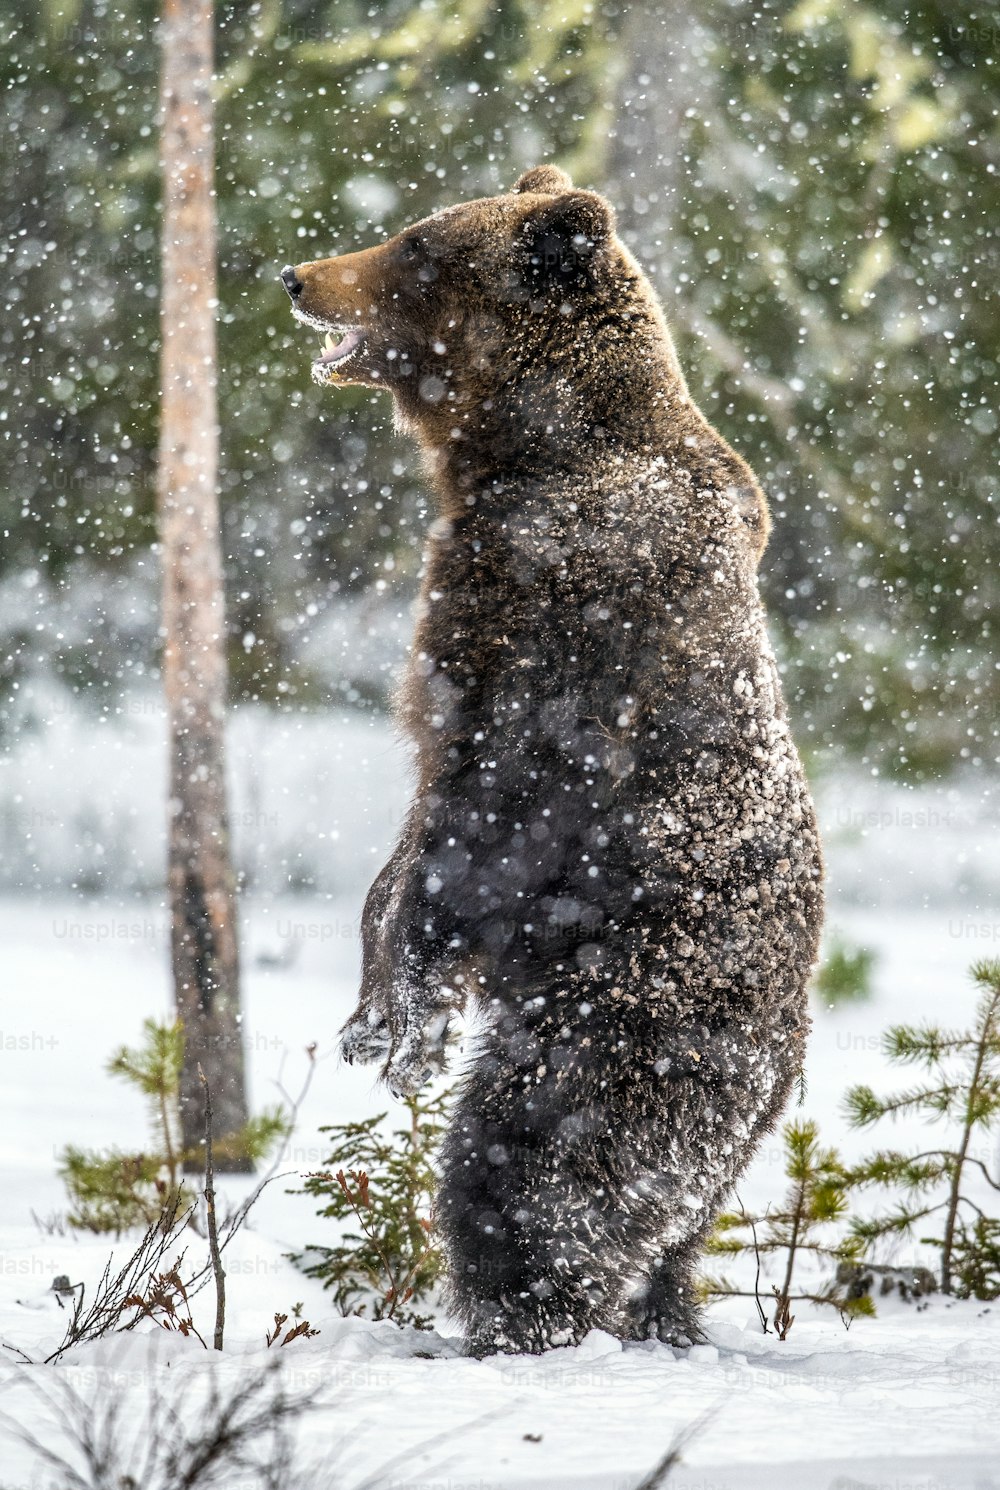 Orso bruno in piedi sulle zampe posteriori sulla neve nella foresta invernale. Nevicata. Nome scientifico: Ursus arctos. Habitat naturale. Stagione invernale.